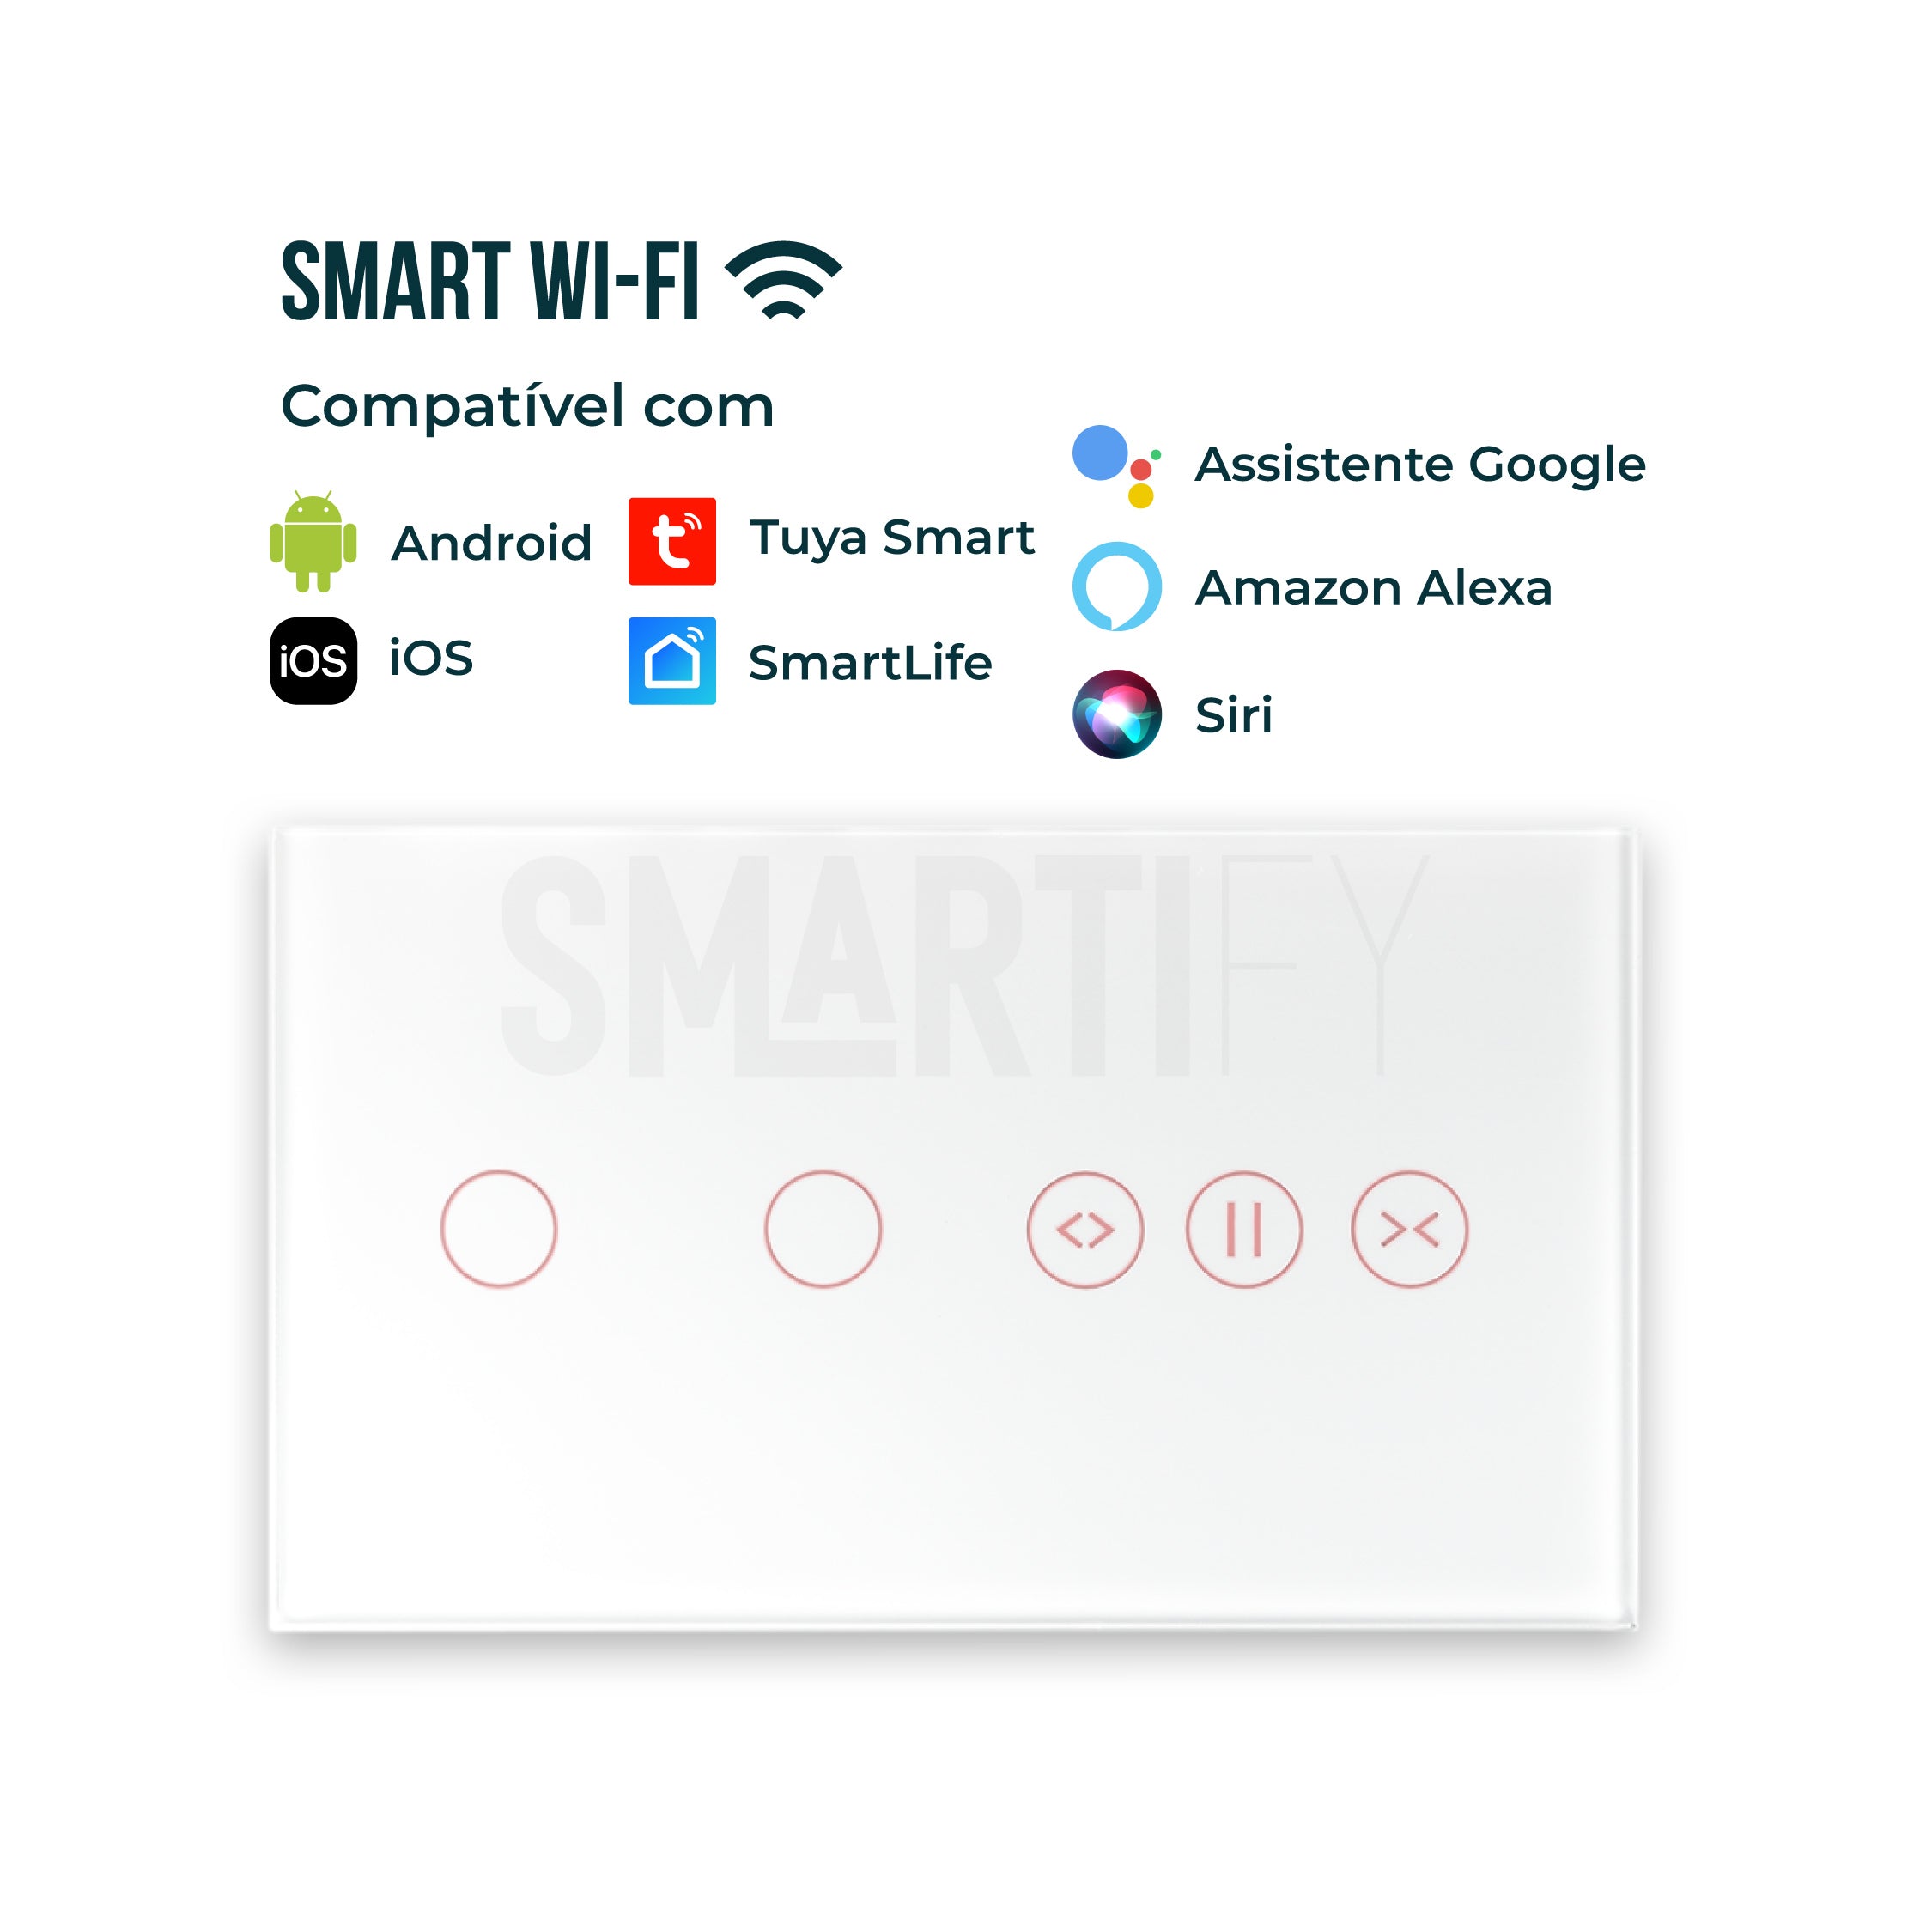 Interruptor de Luz + Interruptor de Estores Duplo Inteligente WiFi Smartify - Branco - Smartify - Casa Inteligente - Smart Home - Domotica - Casas Inteligentes